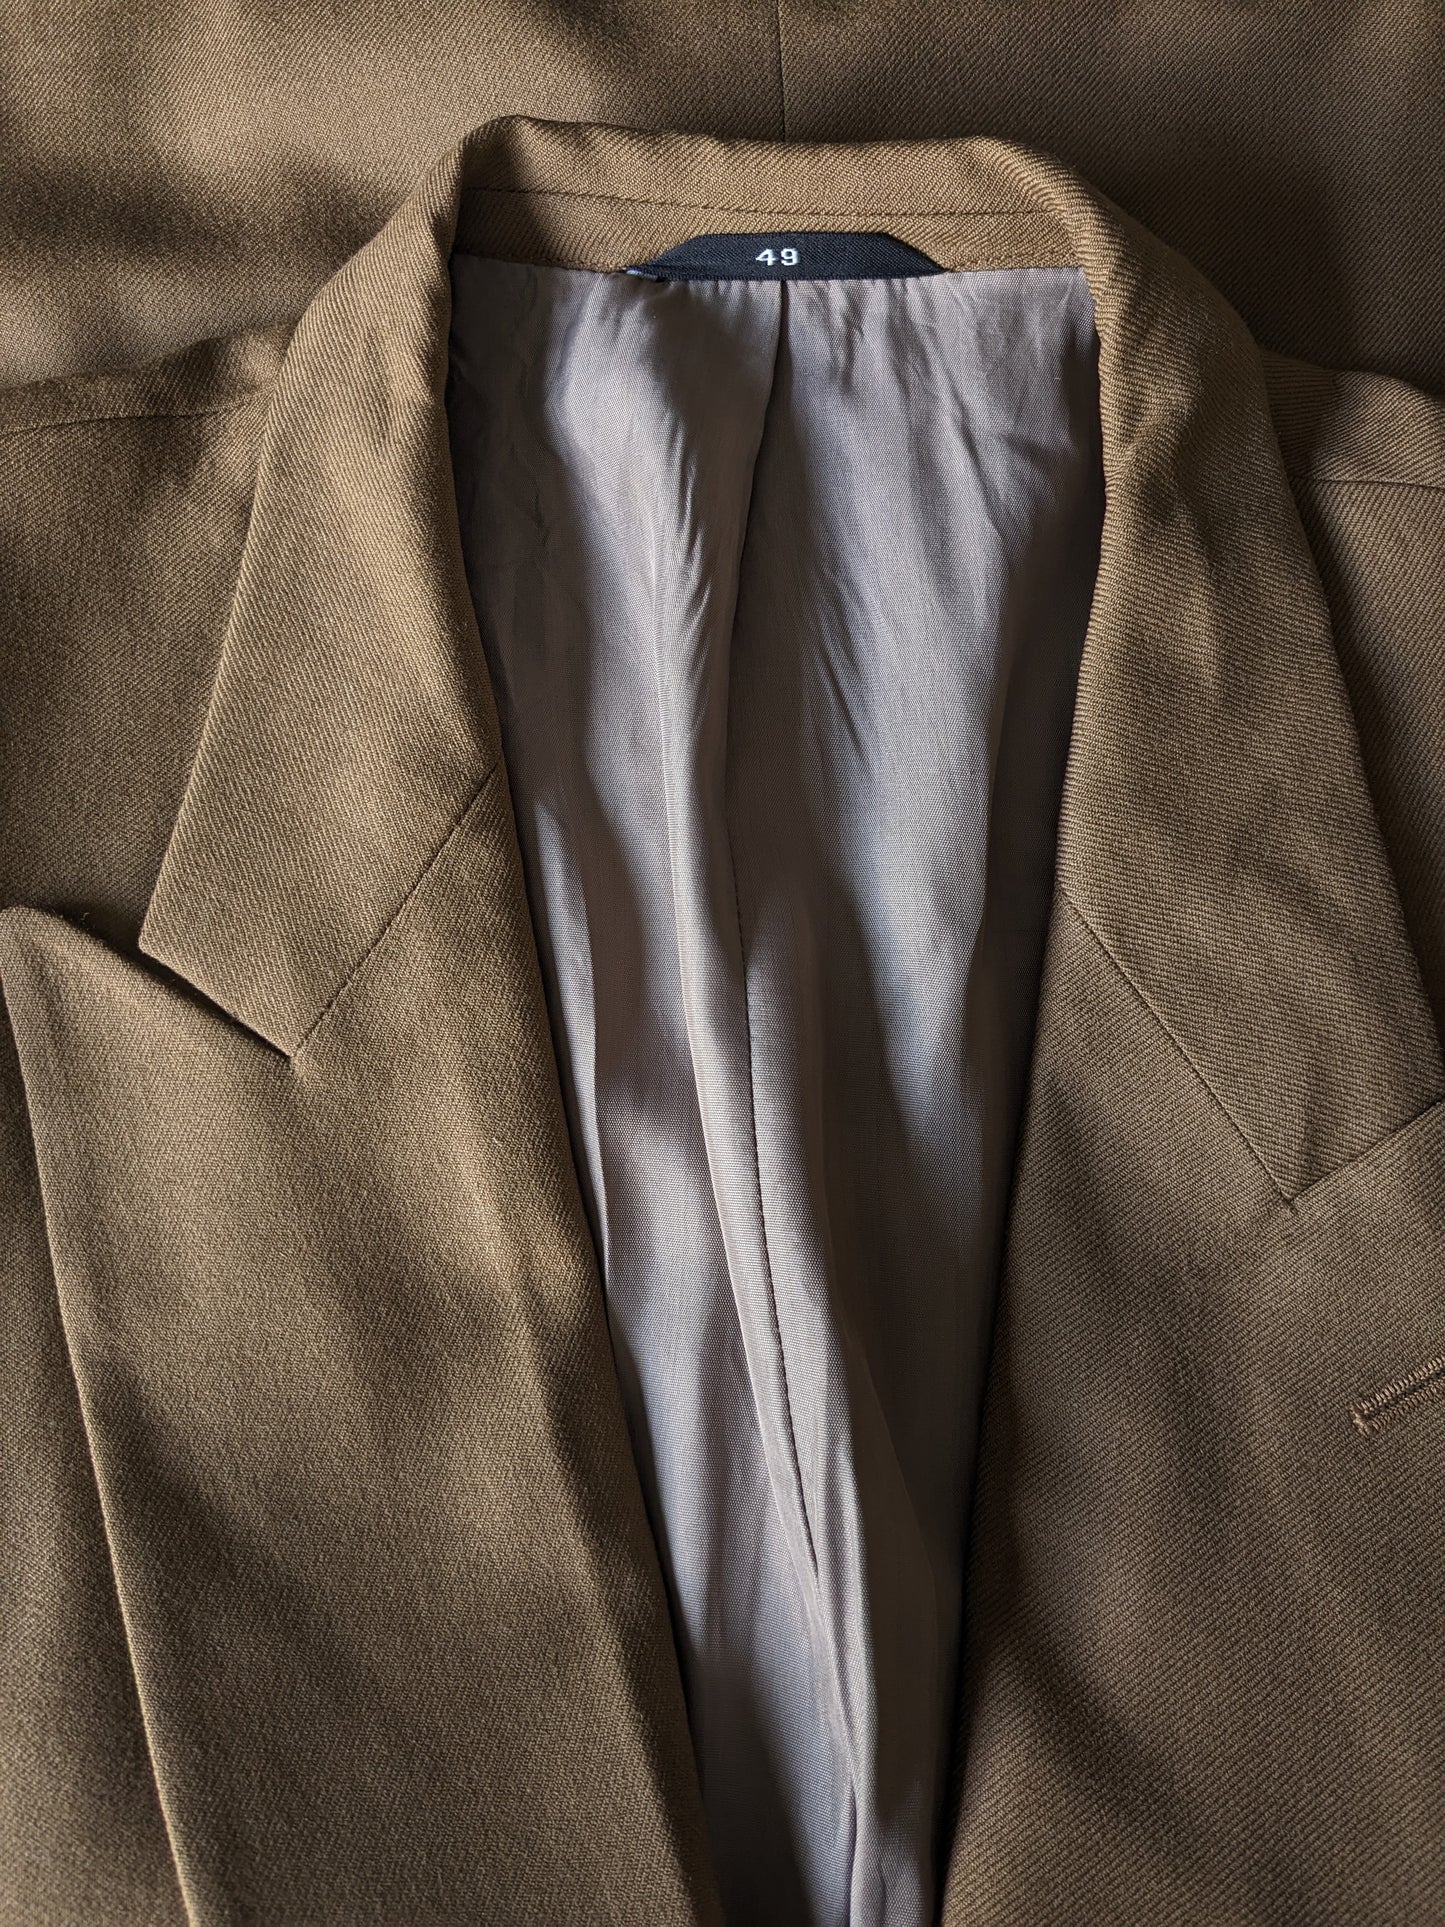 B Choix: Andrews en laine vintage et veste à double poitrine. De couleur marron clair. Taille 49 (m).